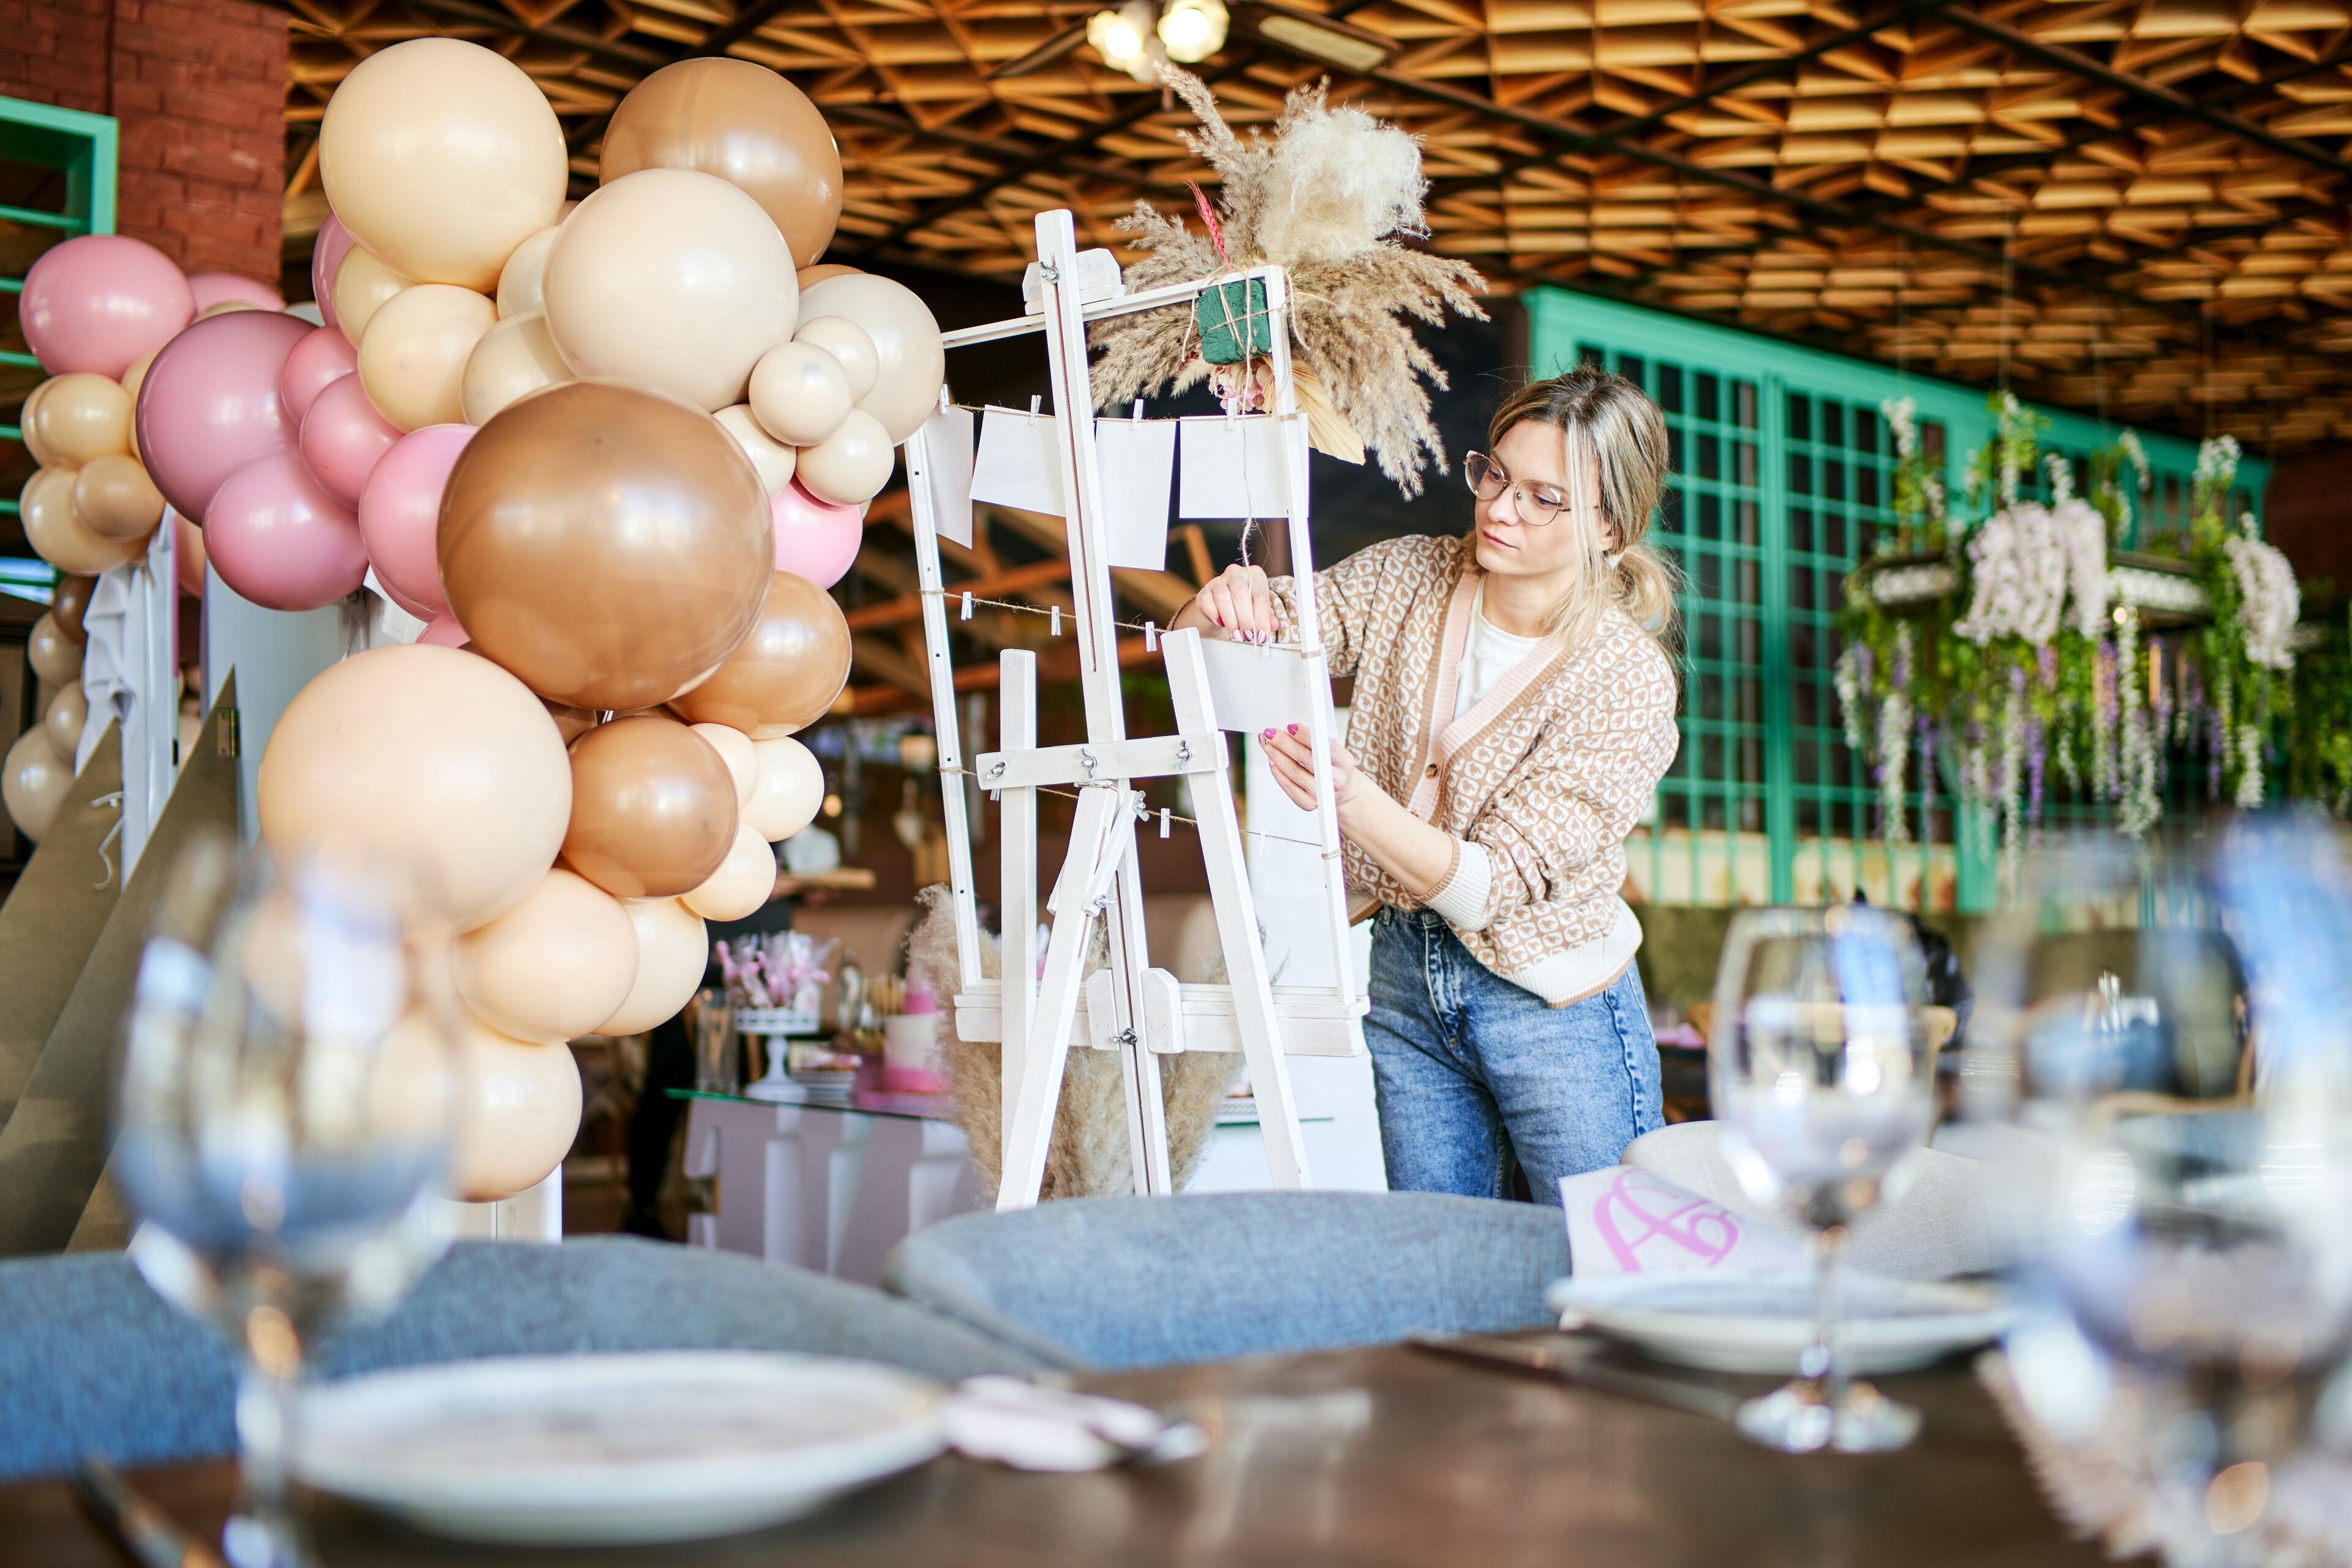 ImageUna organizadora de eventos atenta ajusta decoraciones en un caballete blanco en medio de un ambiente festivo con globos y mesas elegantemente puestas.